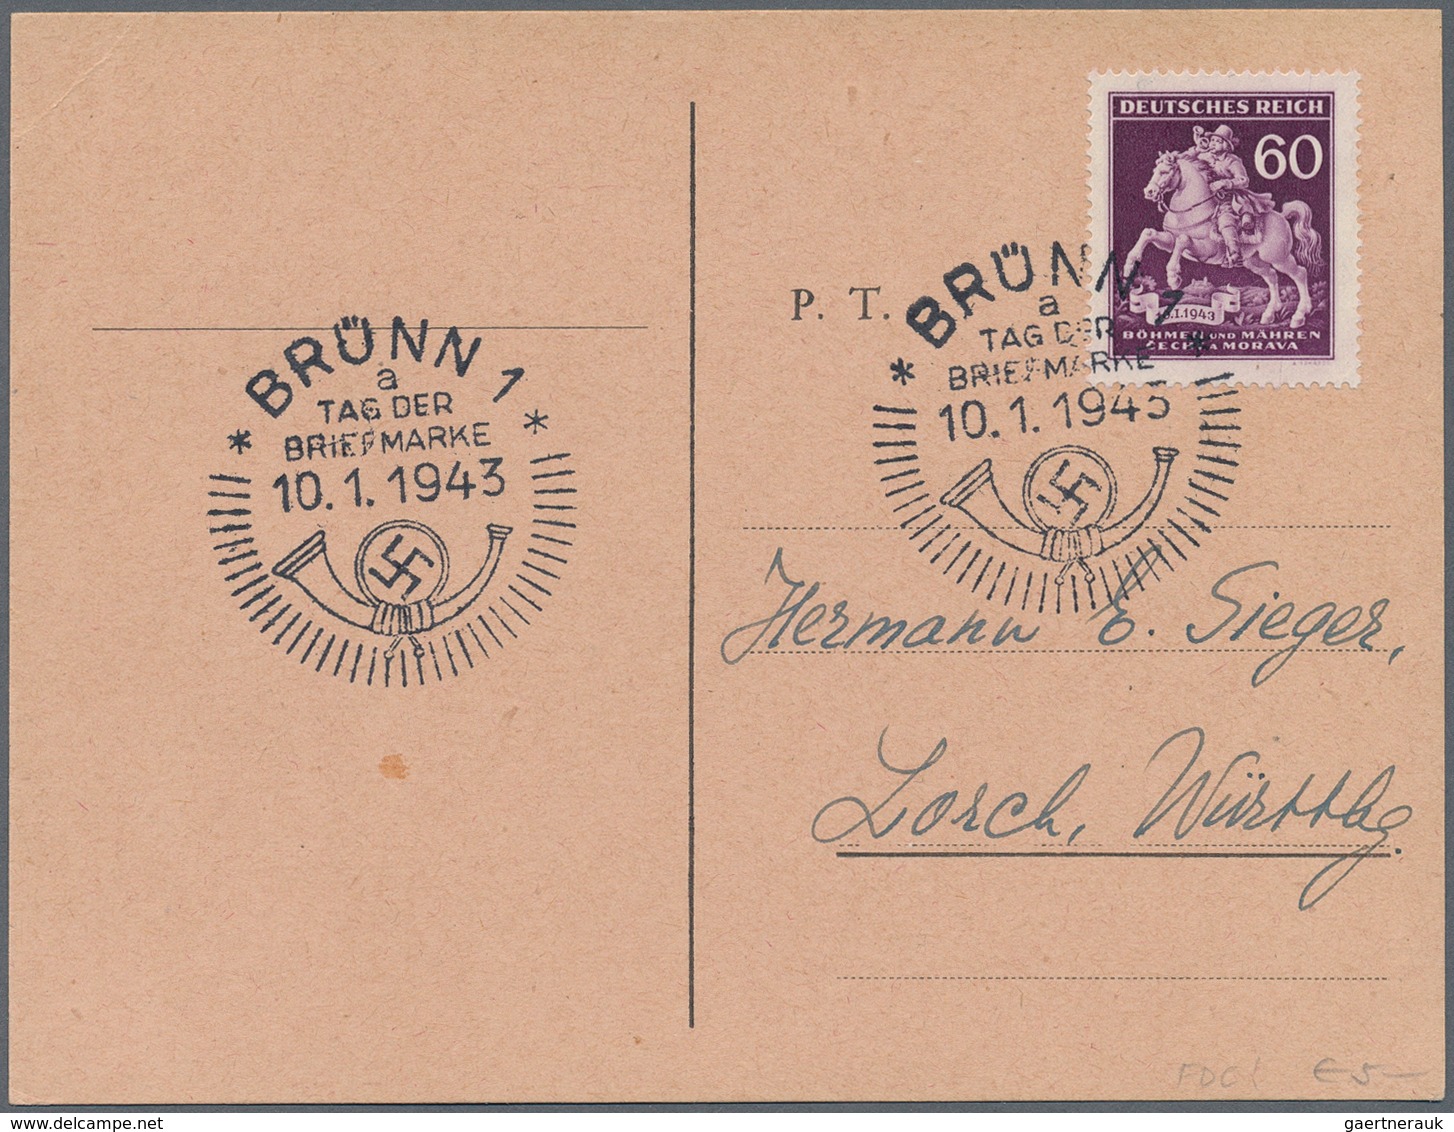 25419 Thematik: Philatelie - Tag der Briefmarke / stamp days: 1939/1944: Bestand von 380 meist verschieden